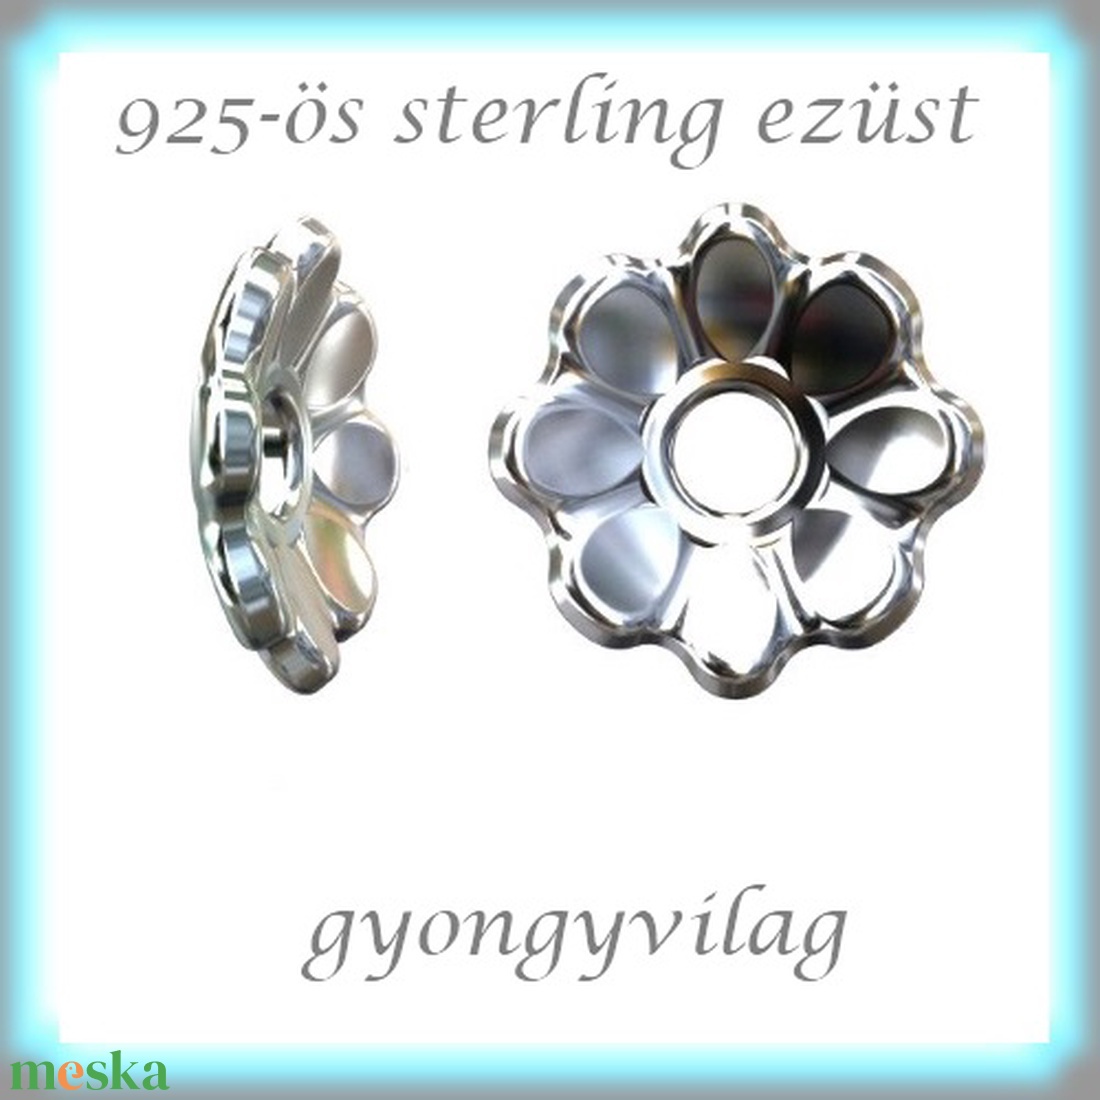 925-ös sterling ezüst ékszerkellék: gyöngykupak EGYK 35  2db/csomag - gyöngy, ékszerkellék - fém köztesek - Meska.hu